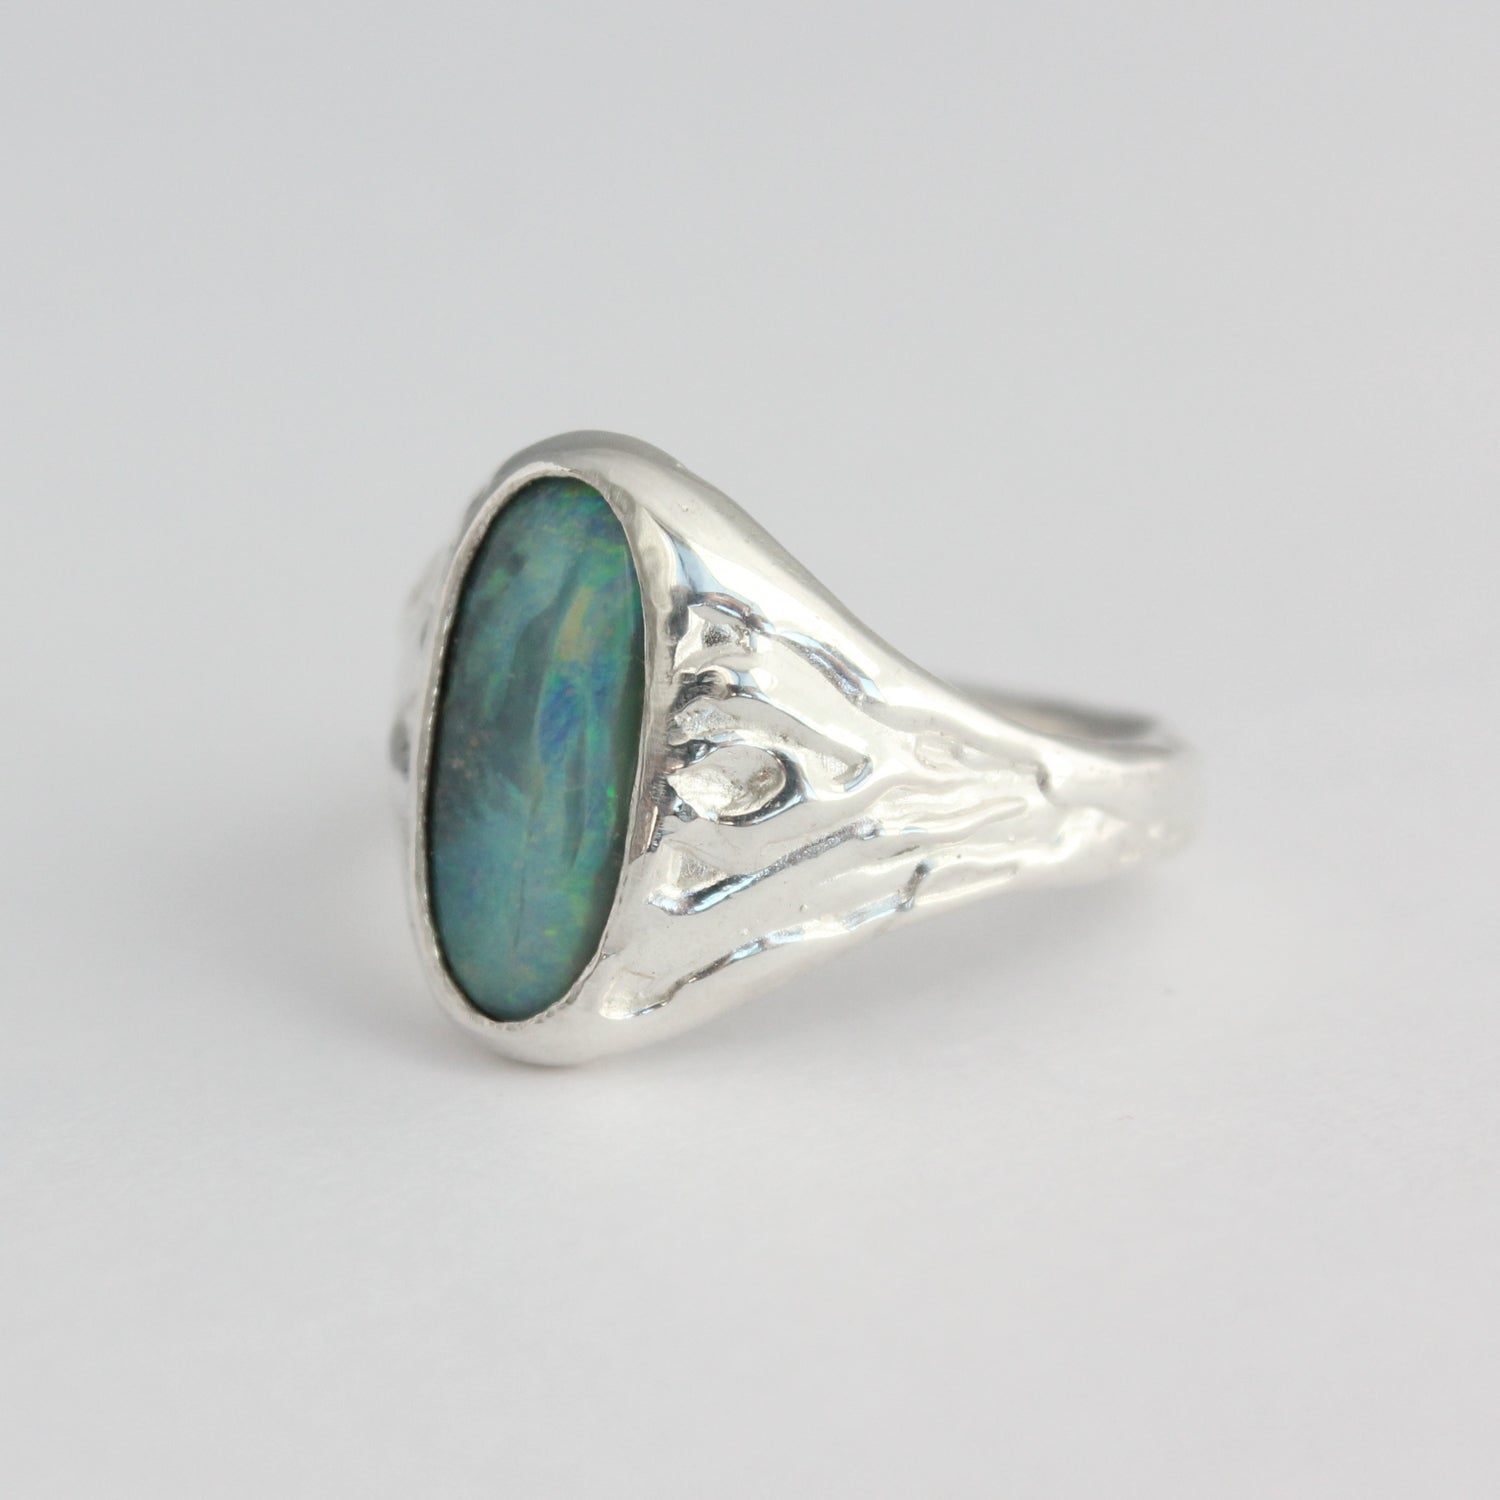 Boulder Opal Ring - Size 9.25